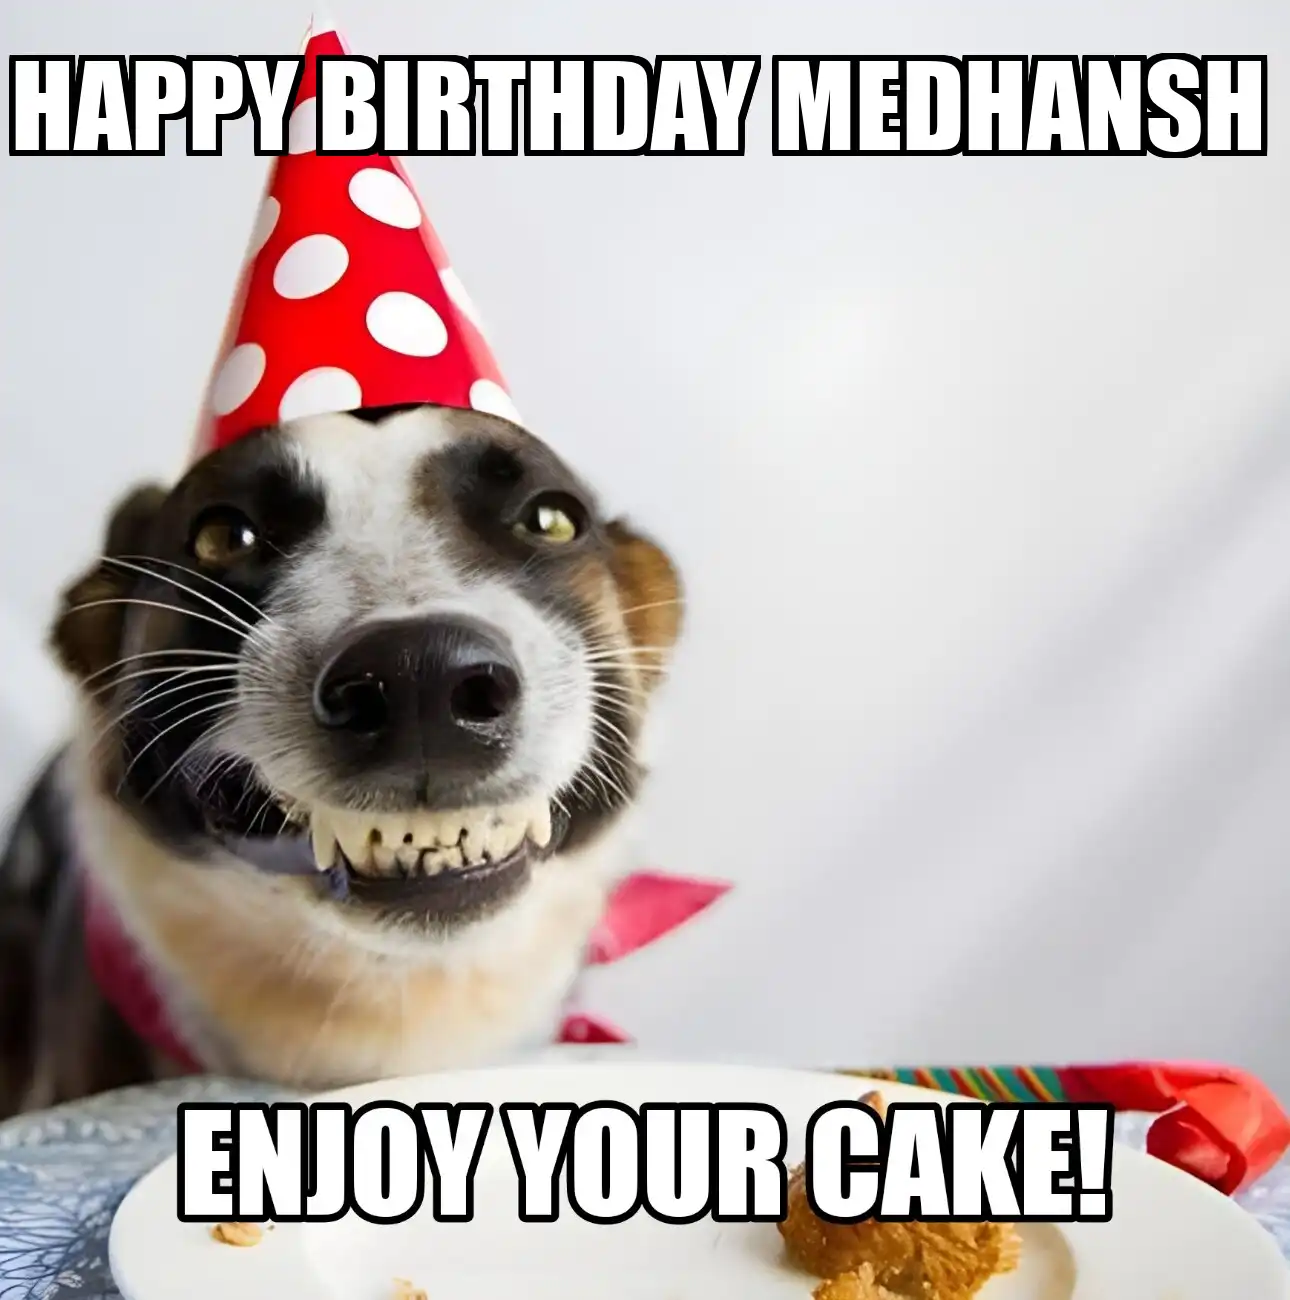 Happy Birthday Medhansh Enjoy Your Cake Dog Meme